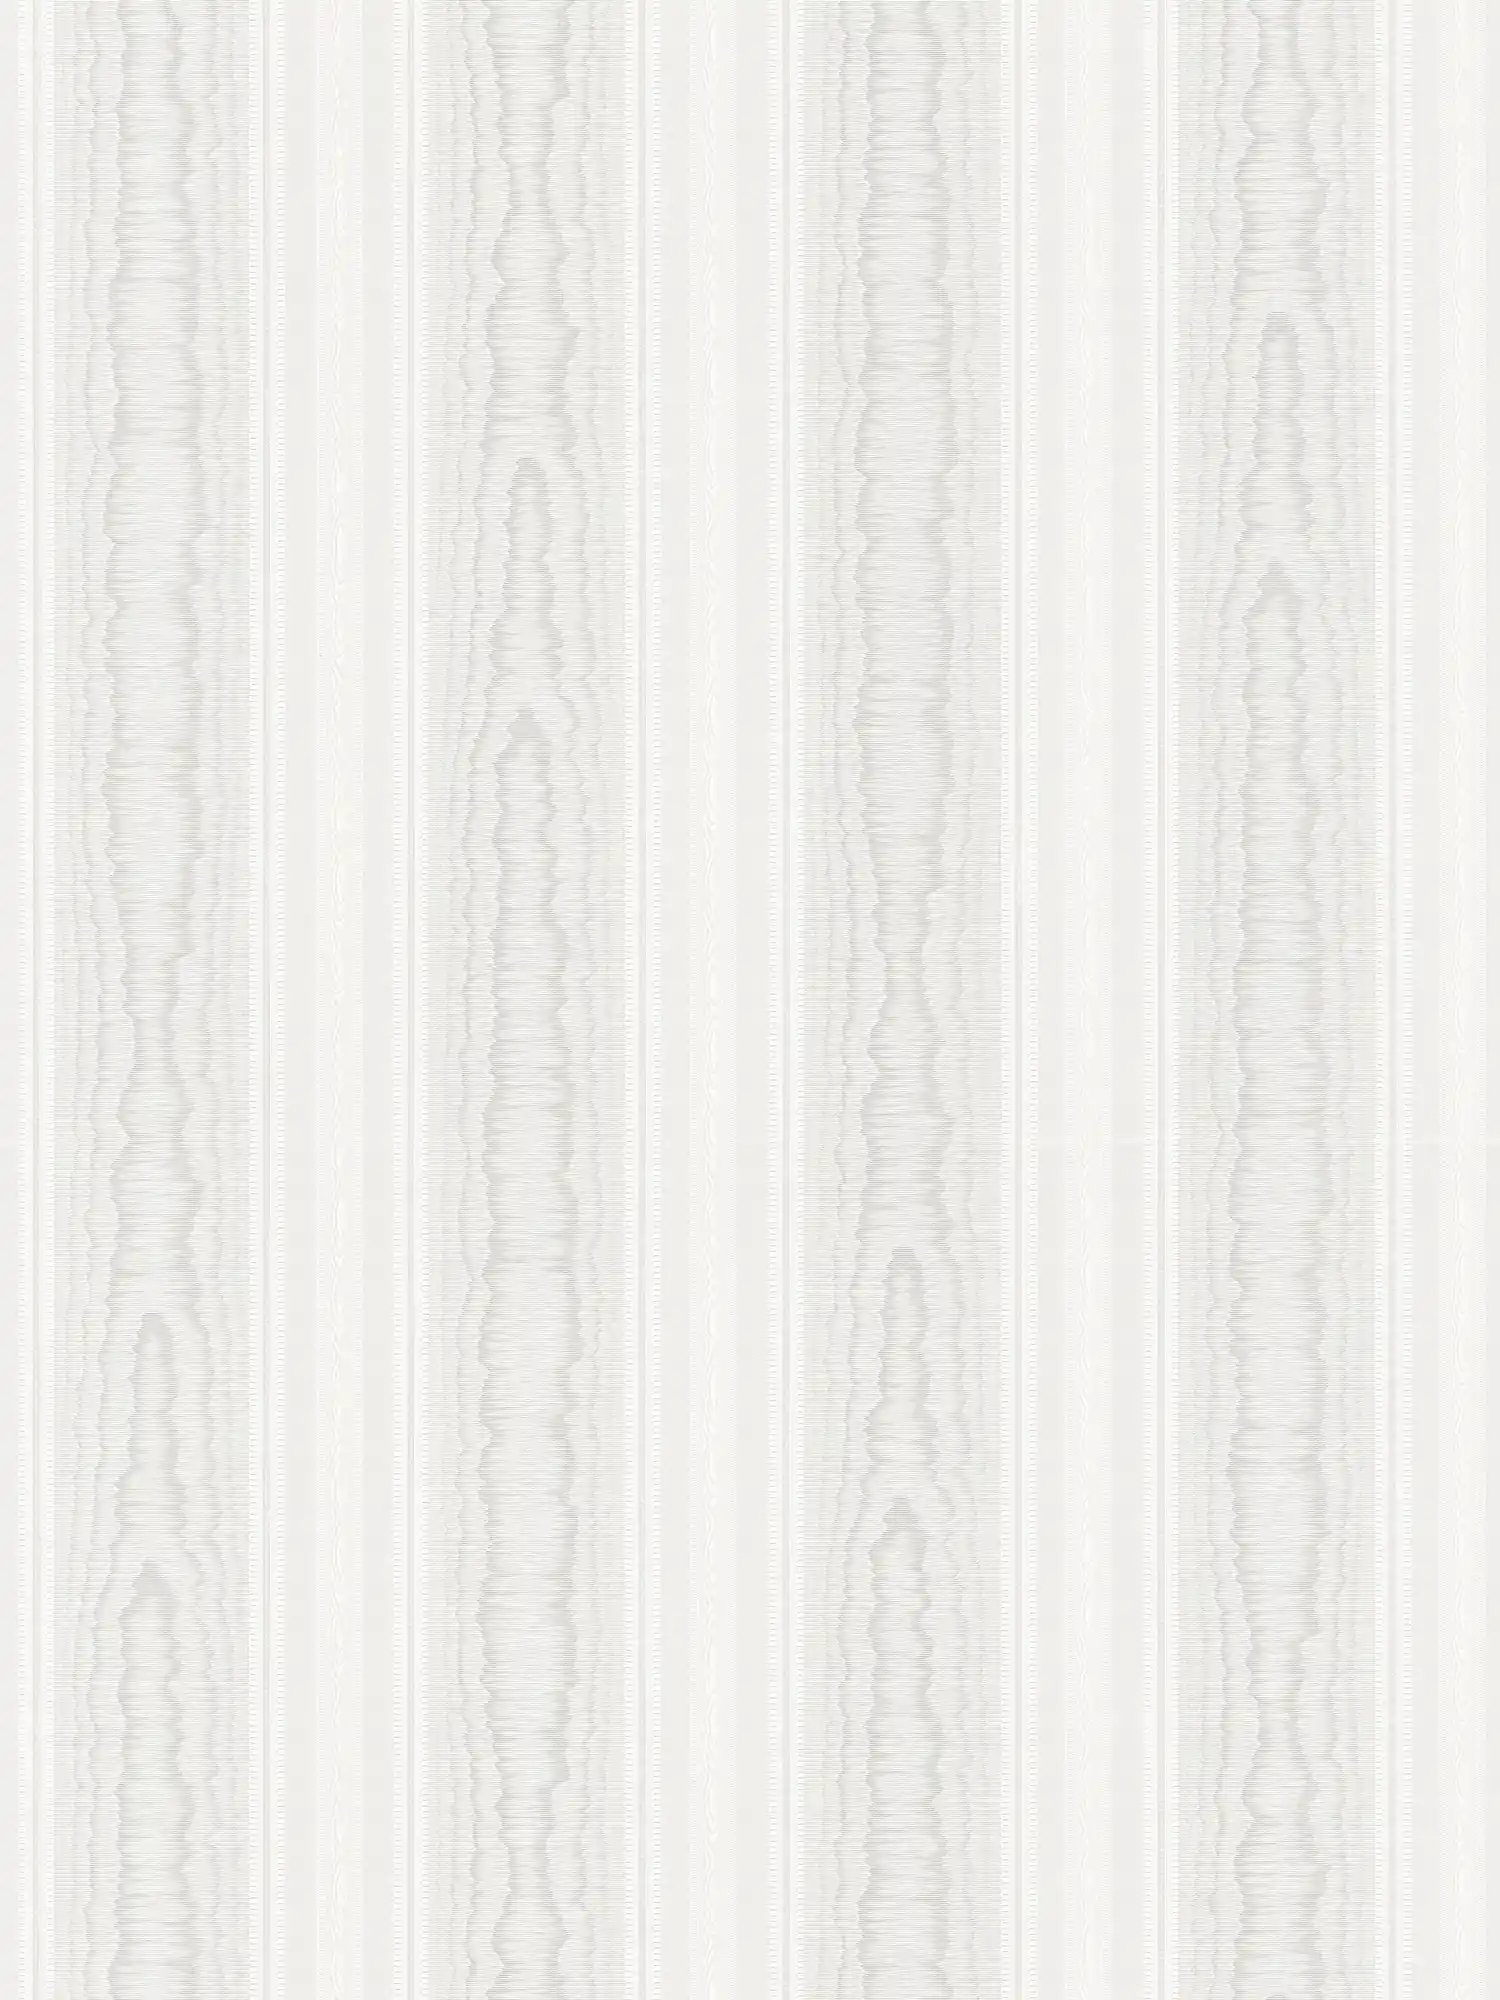 Carta da parati a strisce con motivi effetto legno - crema, bianco
